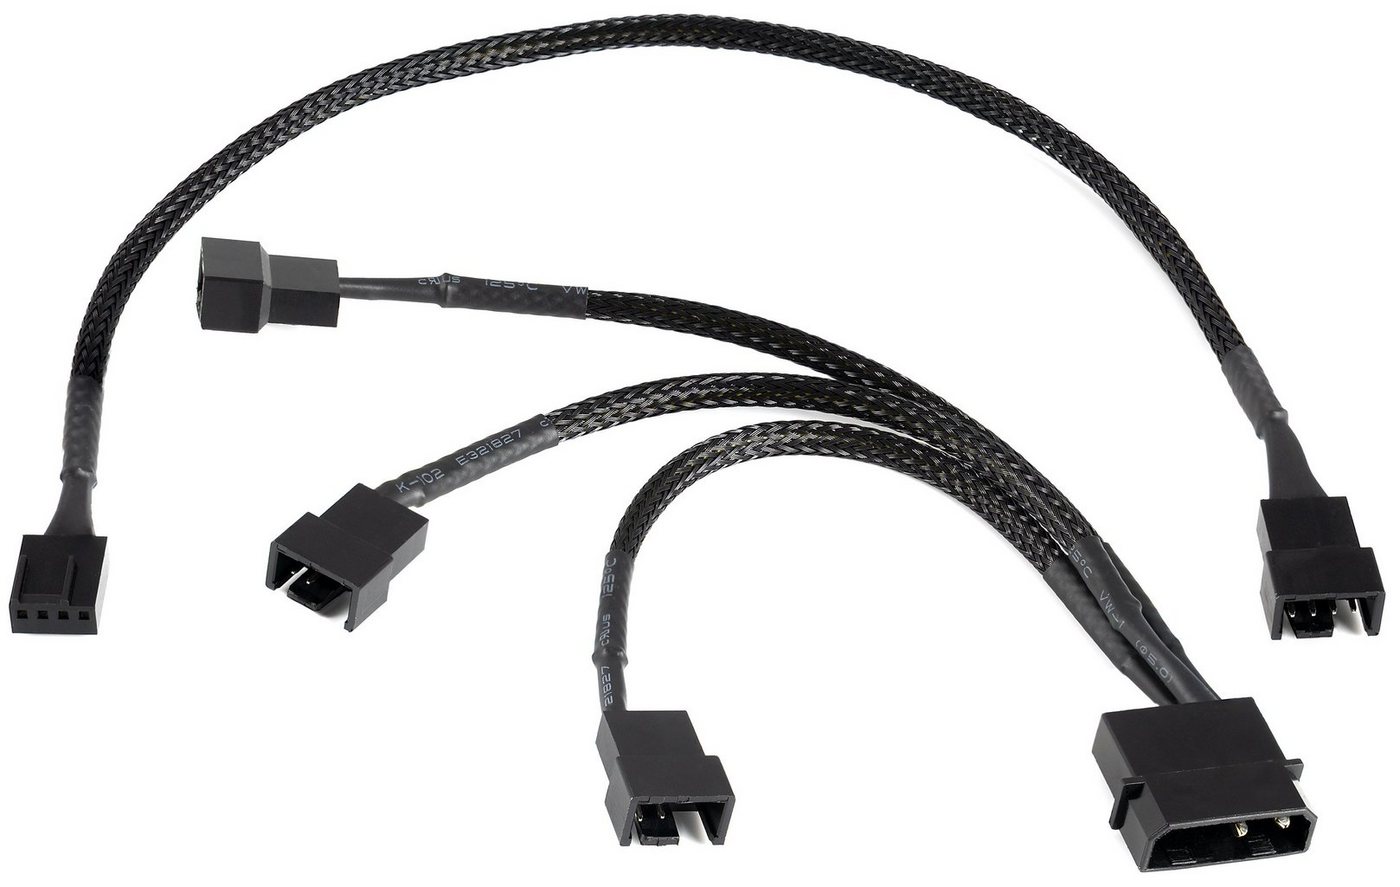 Poppstar Lüfter Kabel Set 12V zum Anschluss von Gehäuselüftern an ein Netzteil Computer-Kabel, Y-Kabel Molex auf 3x 2-Pin-Stecker 15cm + 4-Pin PWM Verlängerung 30cm von Poppstar